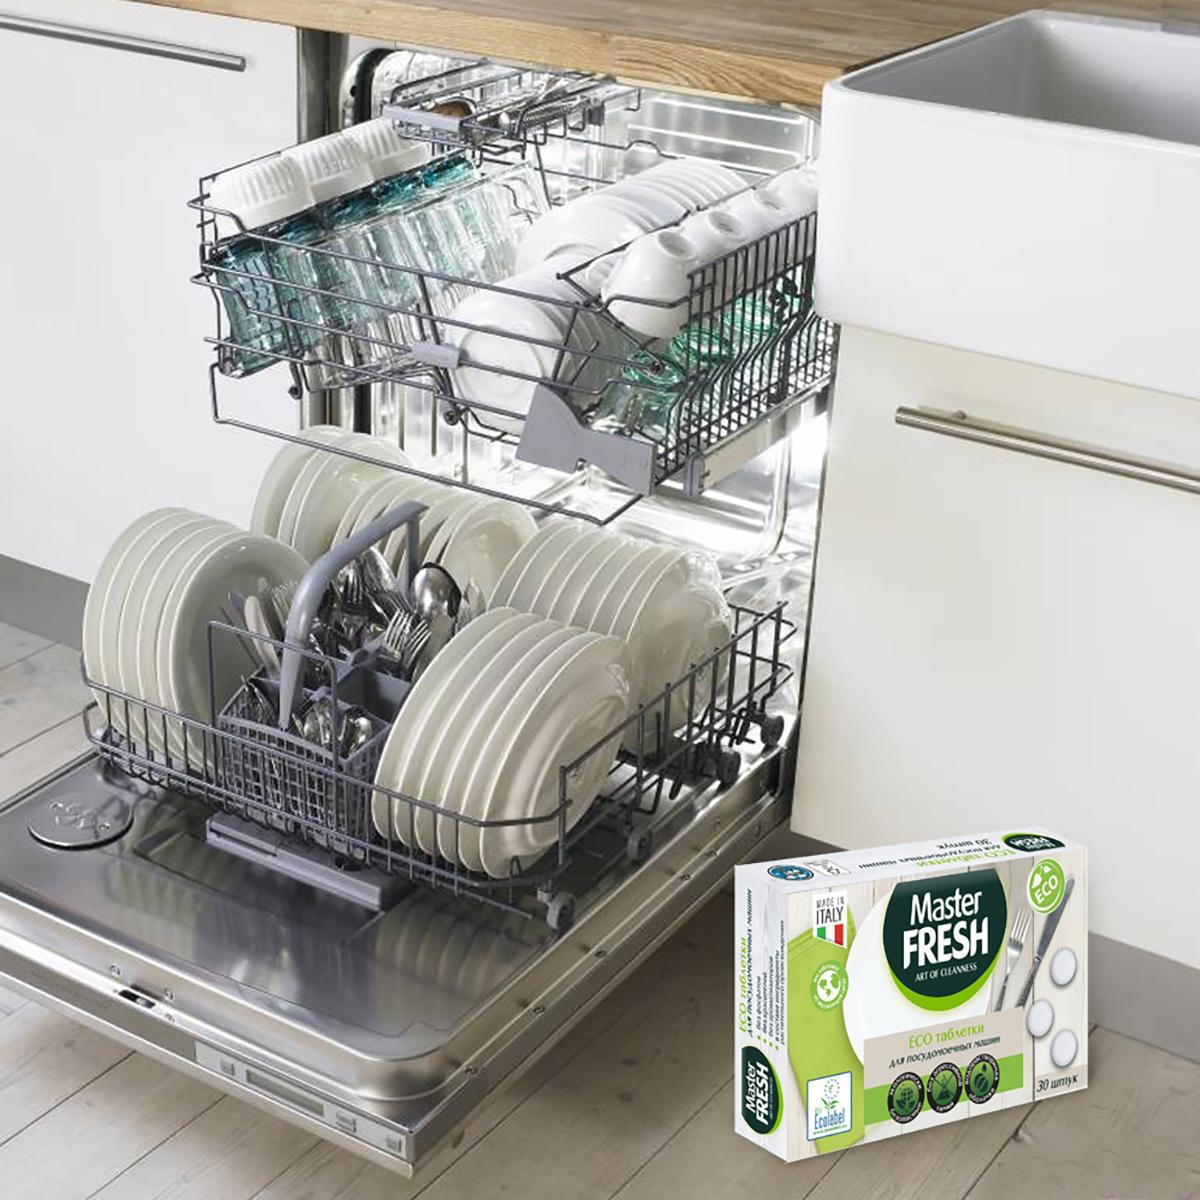 Какие посудомоечные машины хорошие по качеству. Посудомоечная машина Bosch 2020. Посудомоечная машина Kaiser 45170xl импеллер. Посуда в посудомоечной машине.